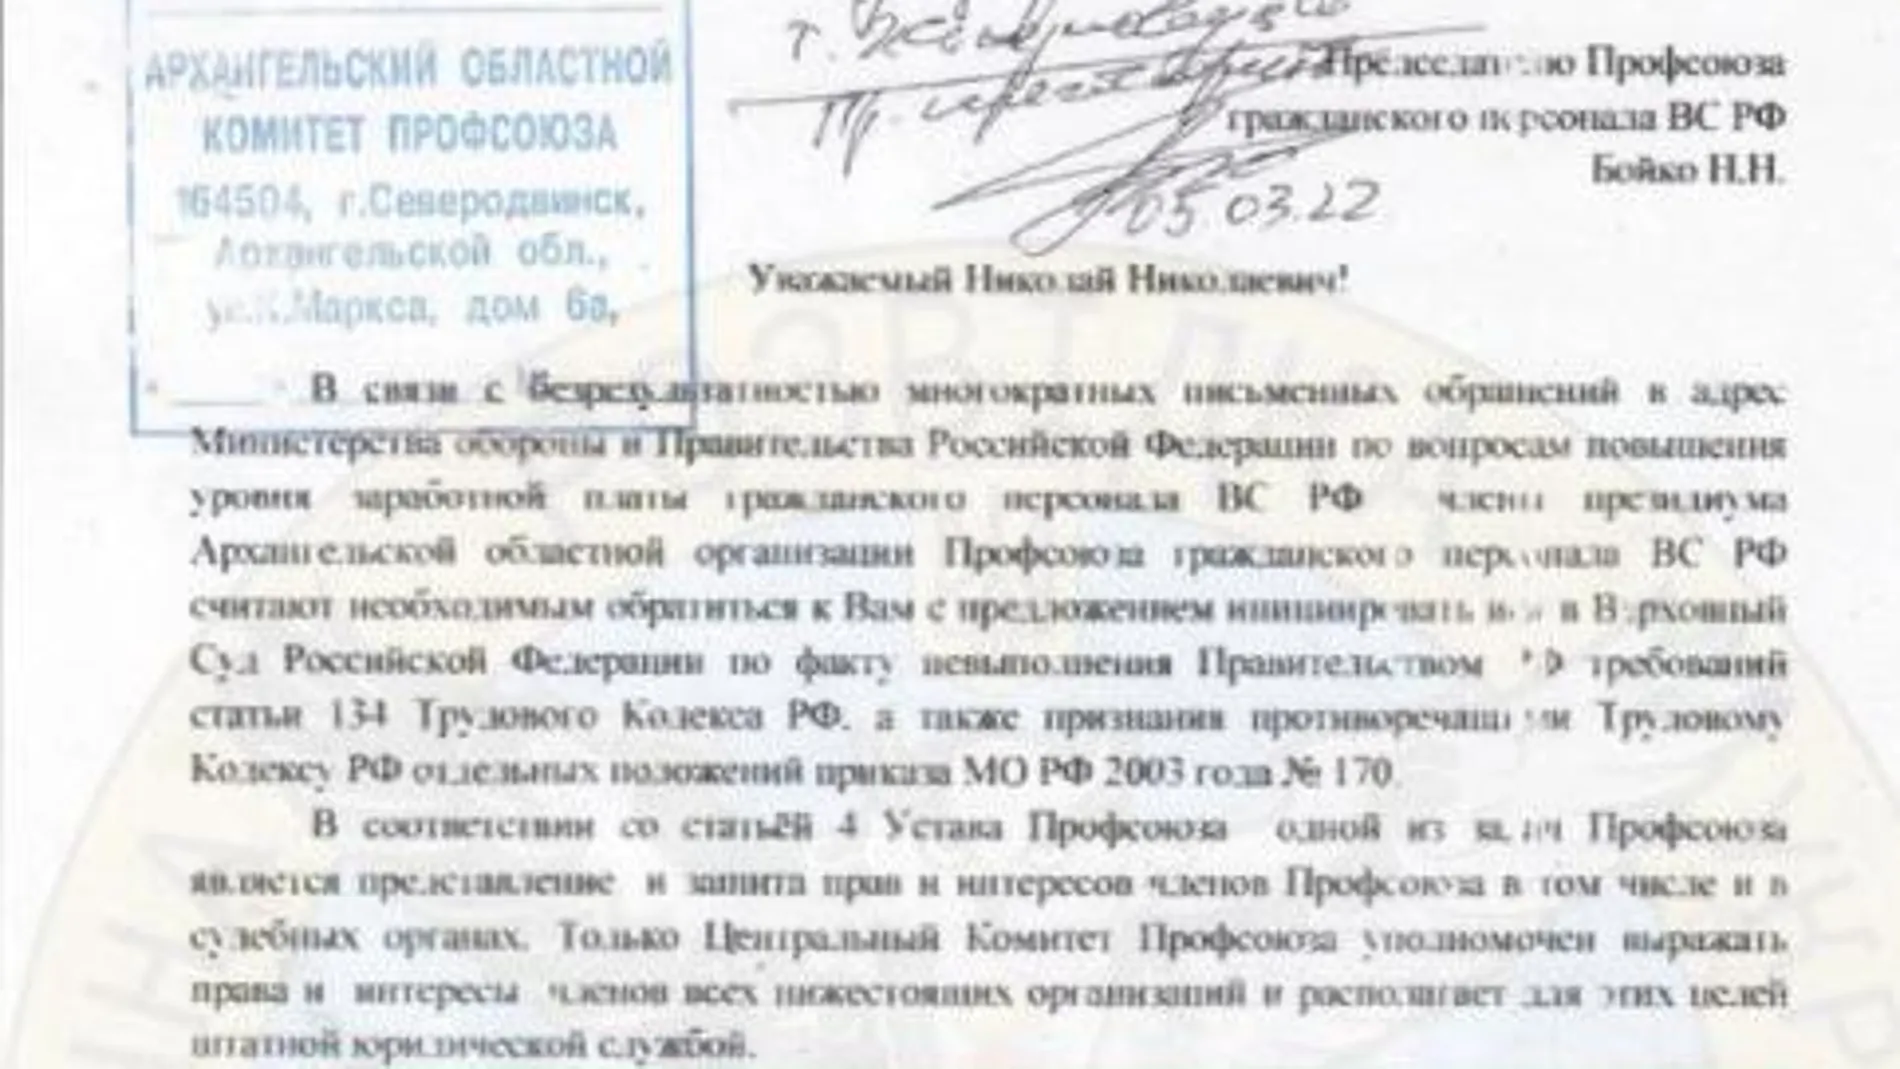 Reproducción del documento de los sindicatos rusos